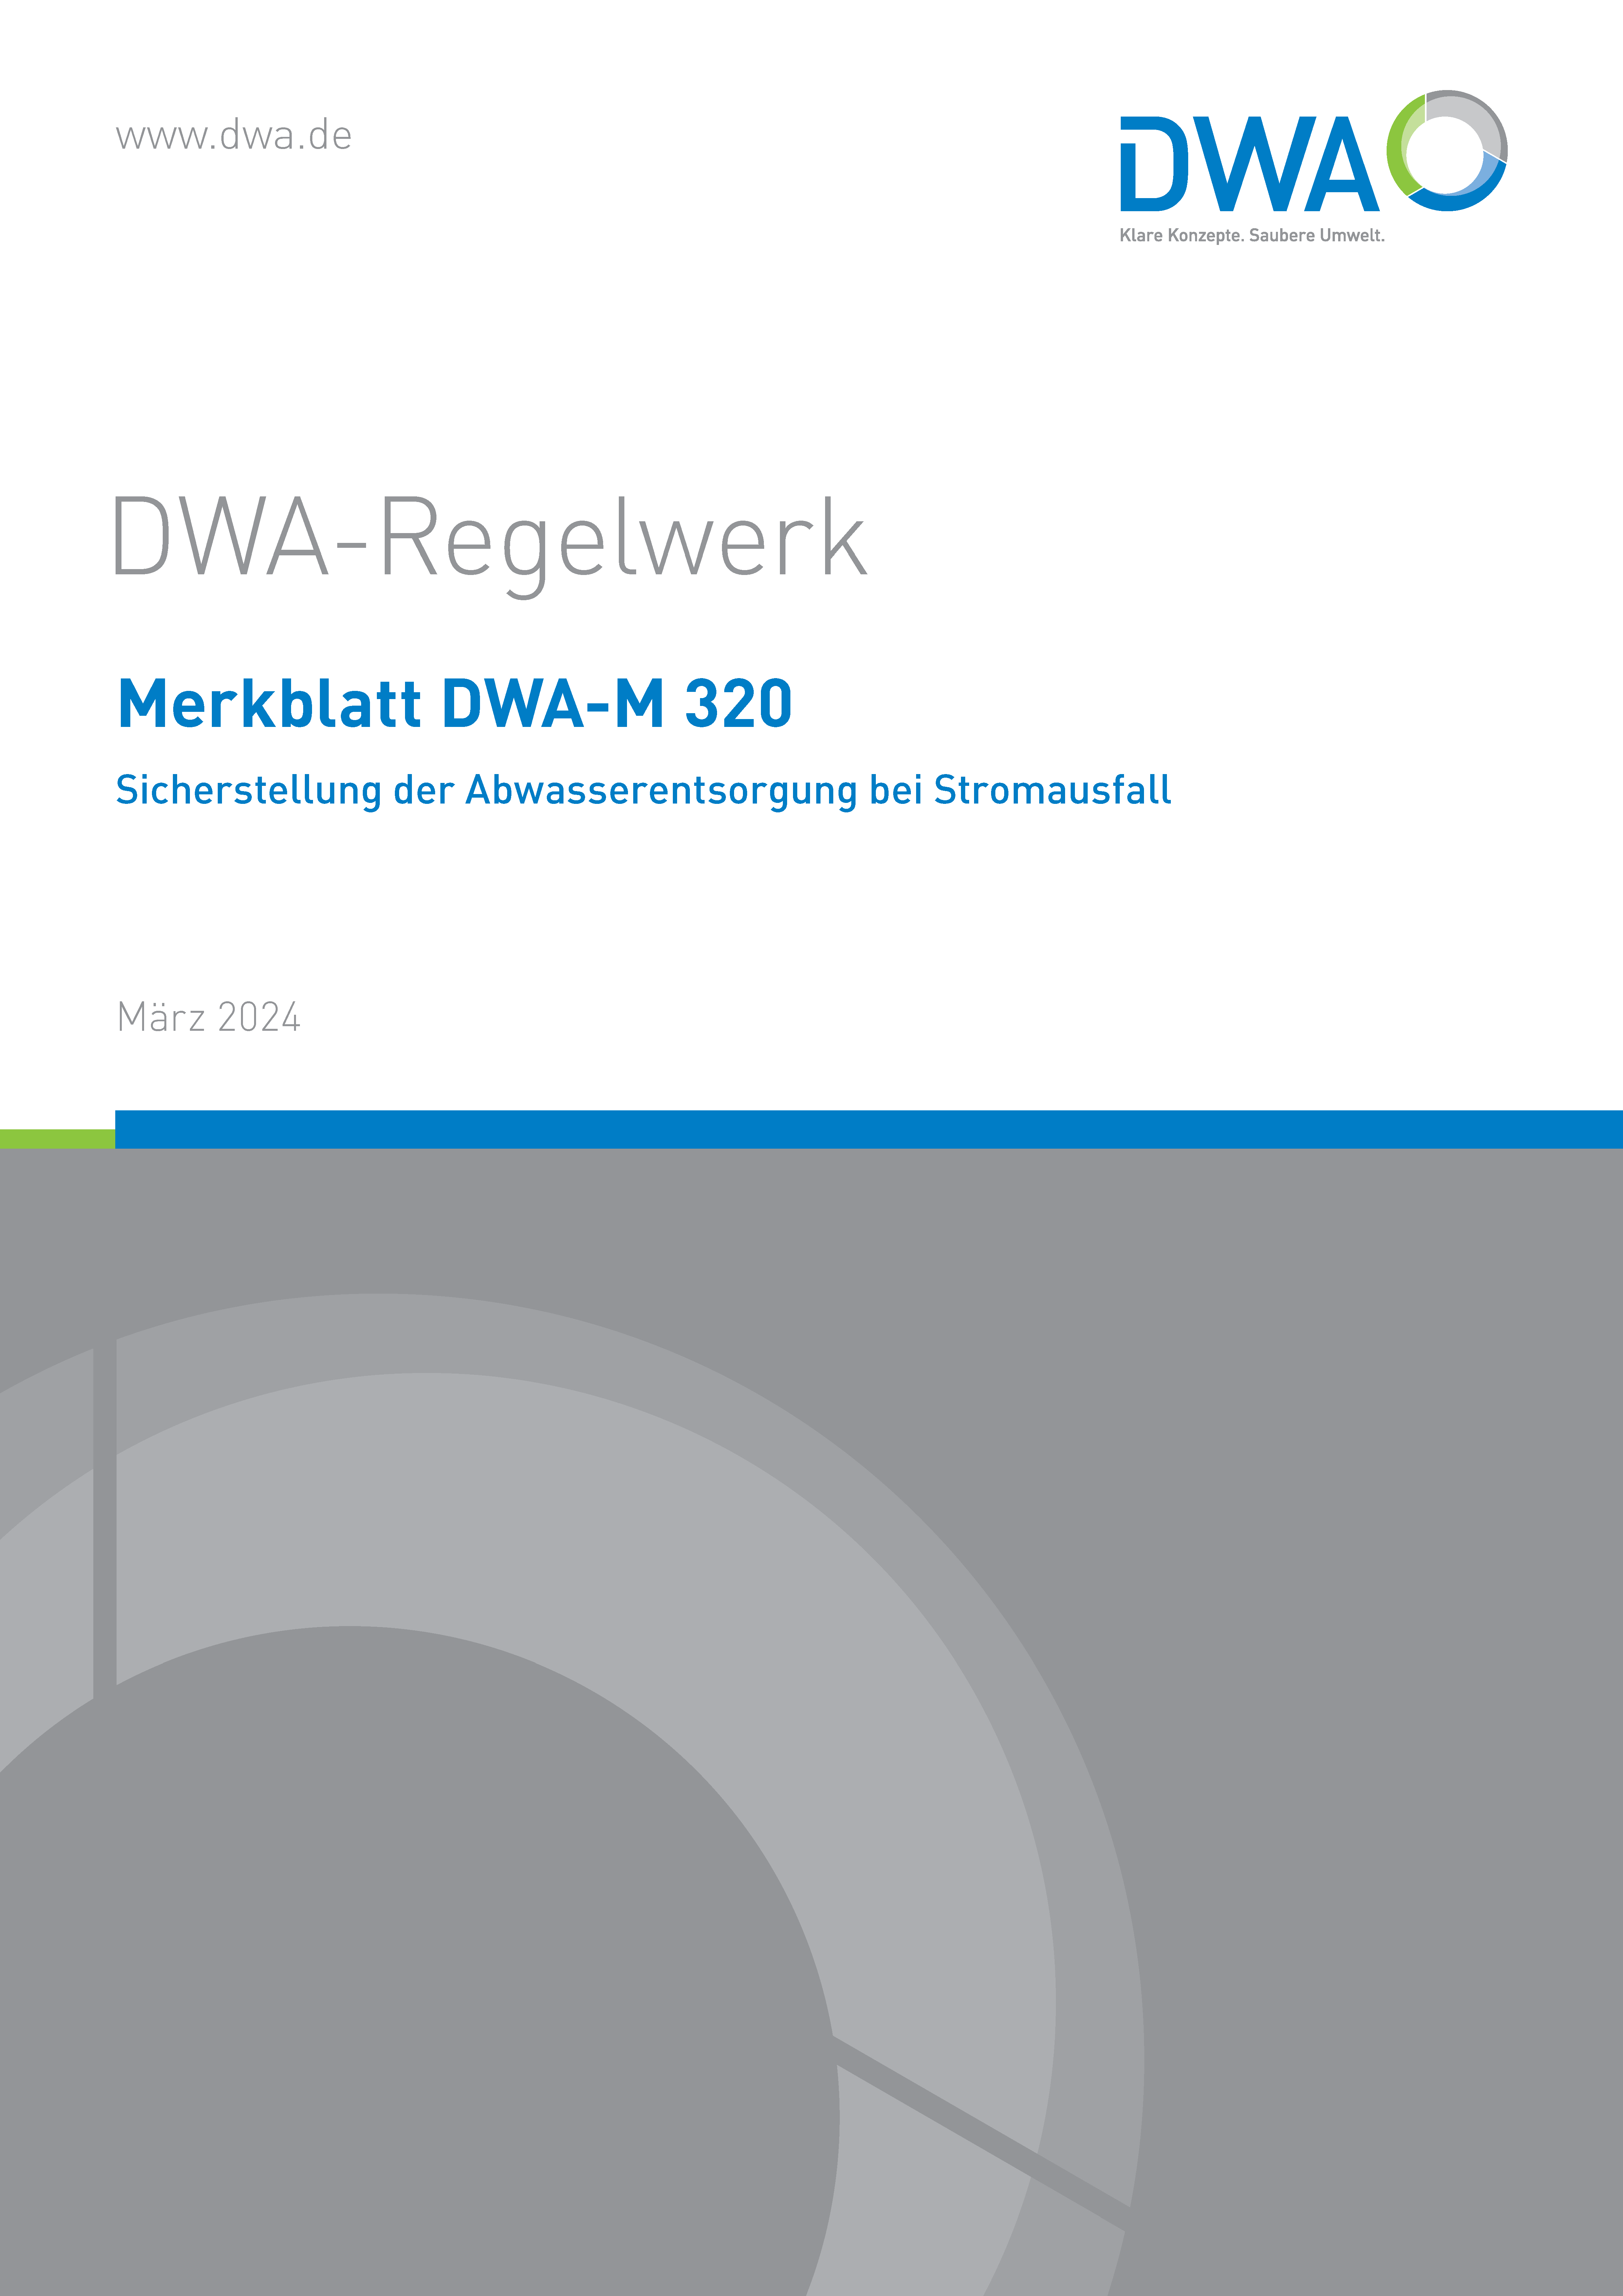 DWA-M 320 - Sicherstellung der Abwasserentsorgung bei Stromausfall - April 2024